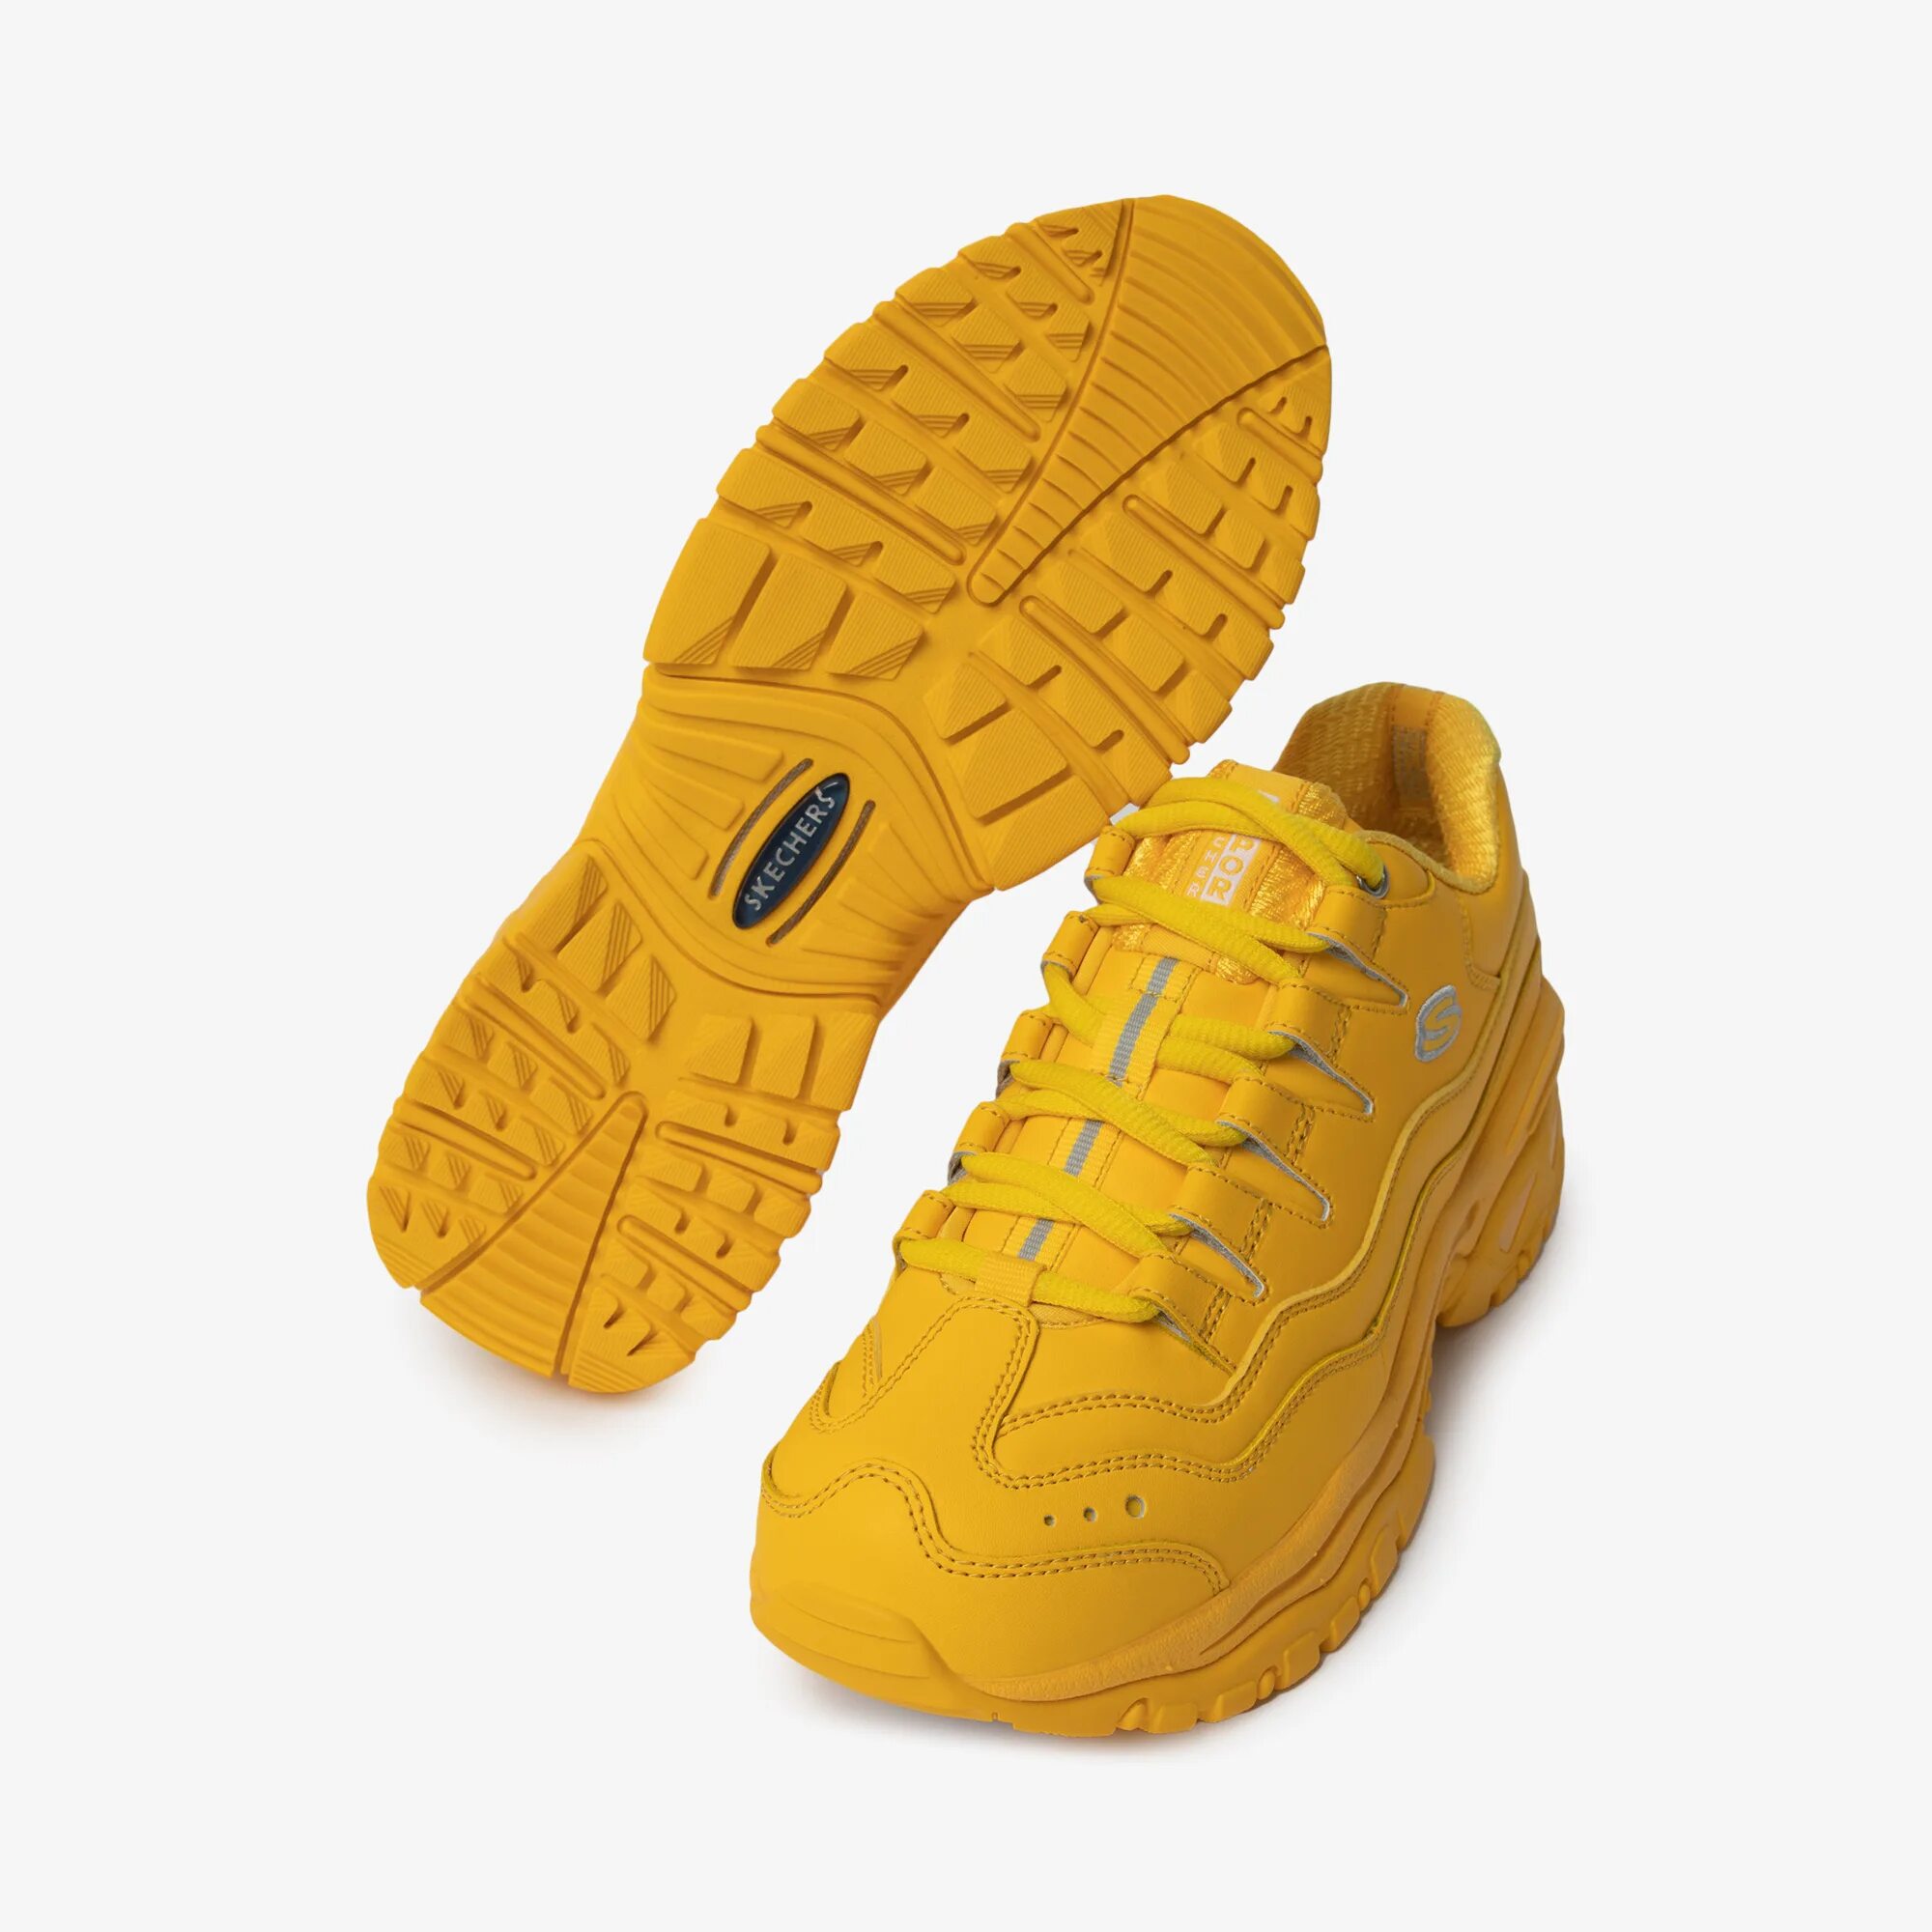 Skechers кроссовки женские желтые. Кроссовки Skechers Energy желтые. Скетчерс кроссовки женские желтые. Skechers кроссовки Energy фуксия. Кроссовки желтого цвета